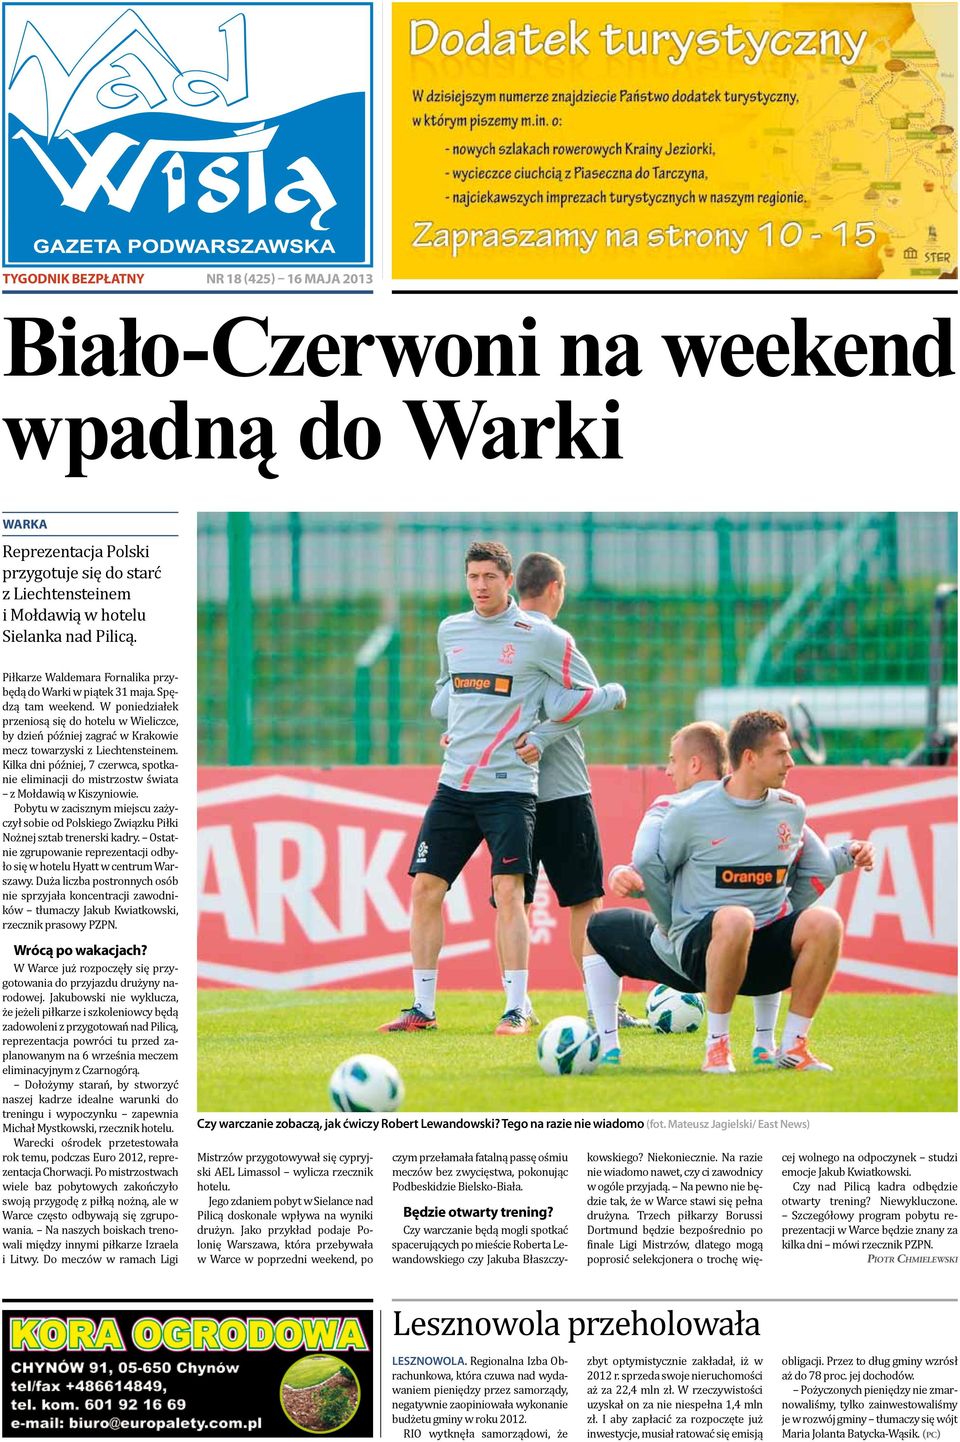 W poniedziałek przeniosą się do hotelu w Wieliczce, by dzień później zagrać w Krakowie mecz towarzyski z Liechtensteinem.